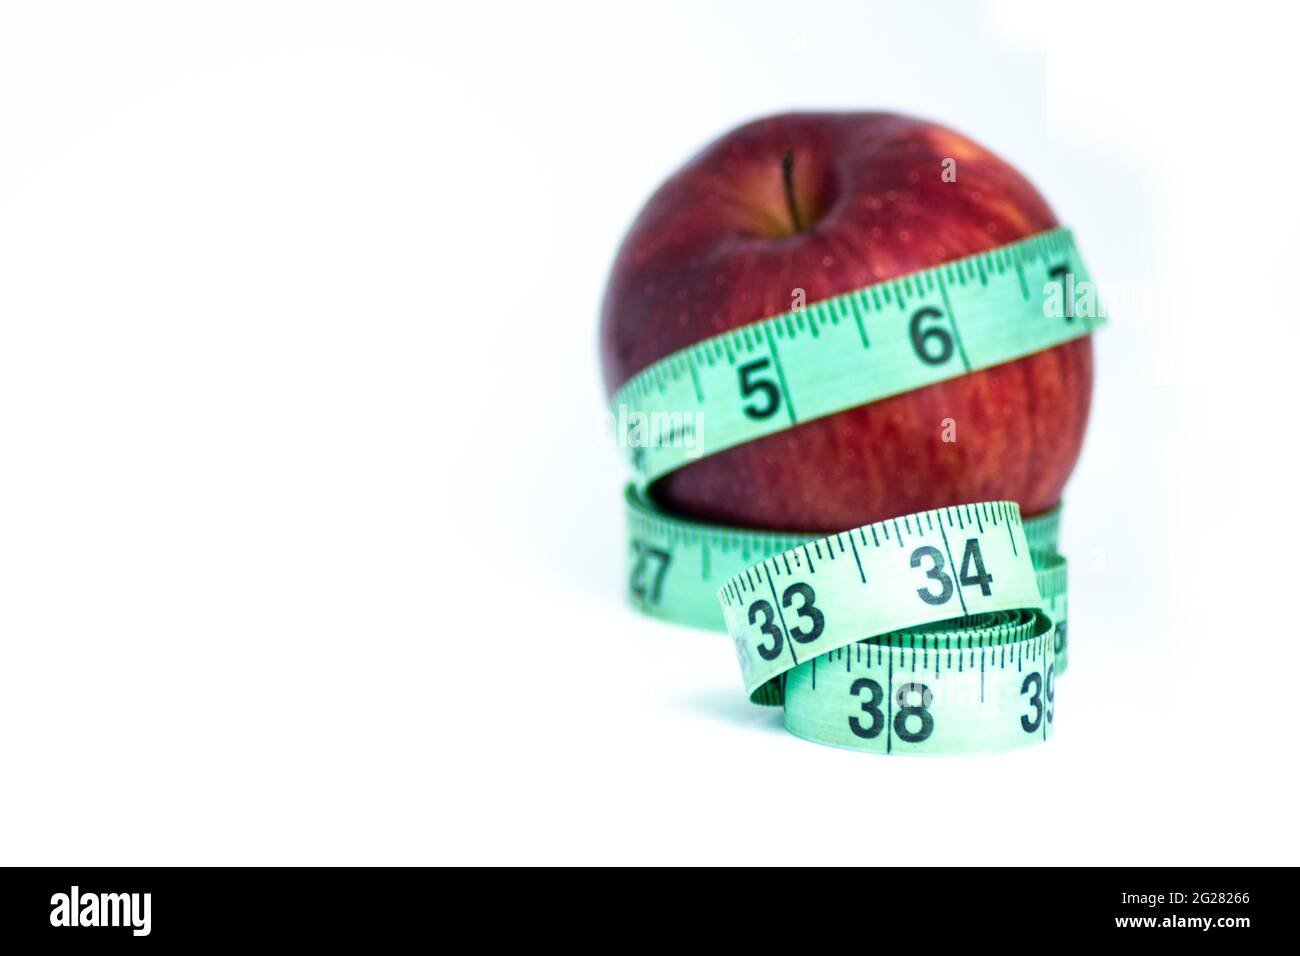 Verschwommener roter Apfel mit Messband isoliert auf weiß - Diät-Konzept Stockfoto